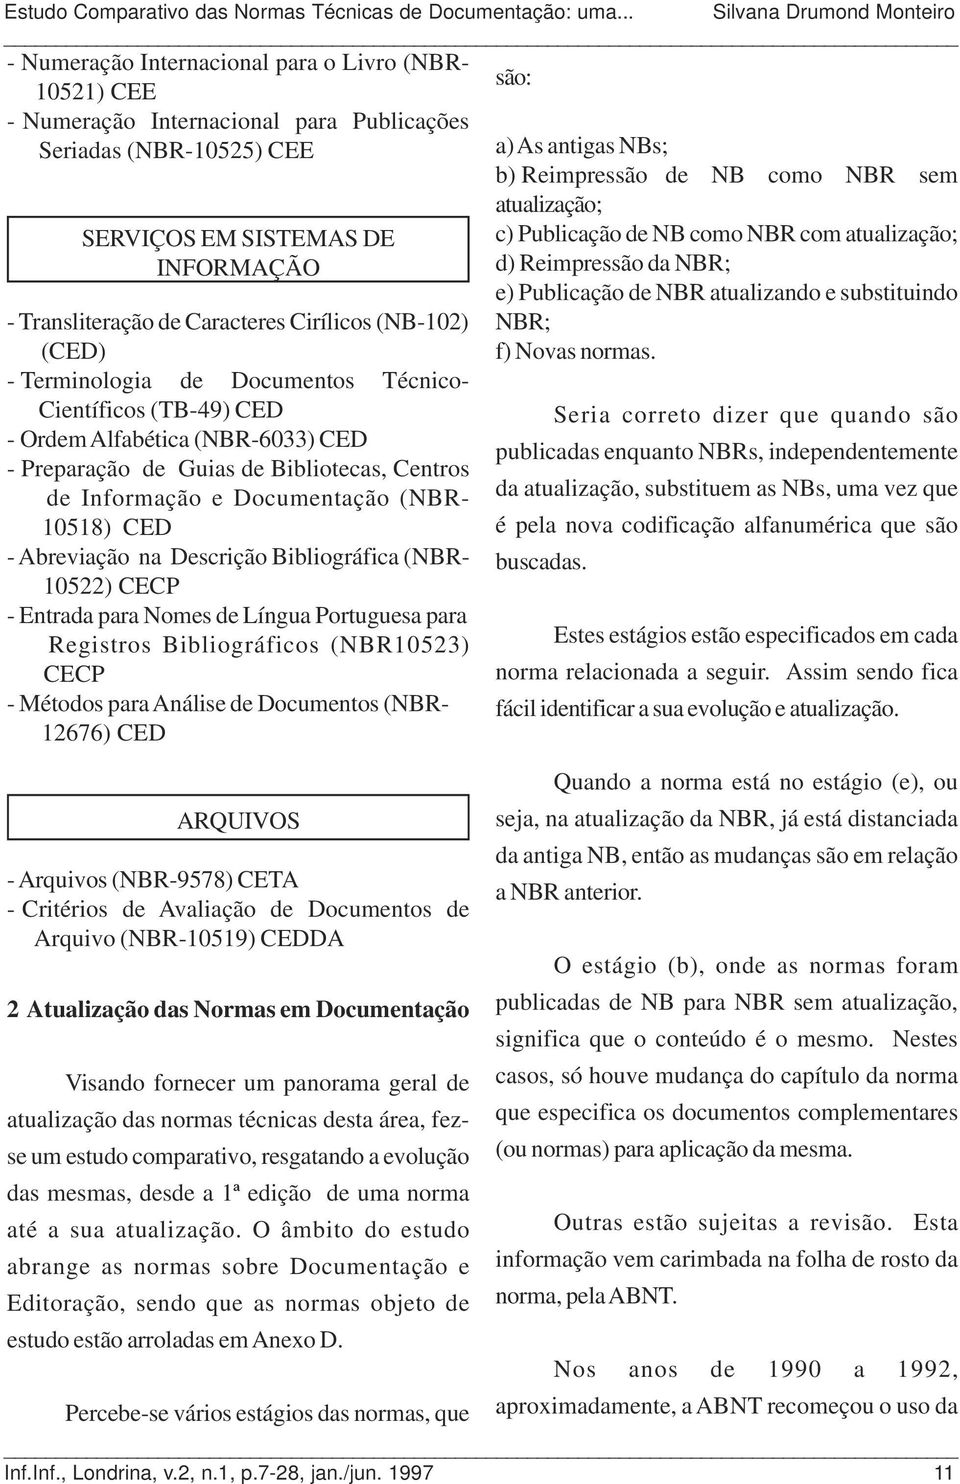 Cirílicos (NB-102) (CED) - Terminologia de Documentos Técnico- Científicos (TB-49) CED - Ordem Alfabética (NBR-6033) CED - Preparação de Guias de Bibliotecas, Centros de Informação e Documentação